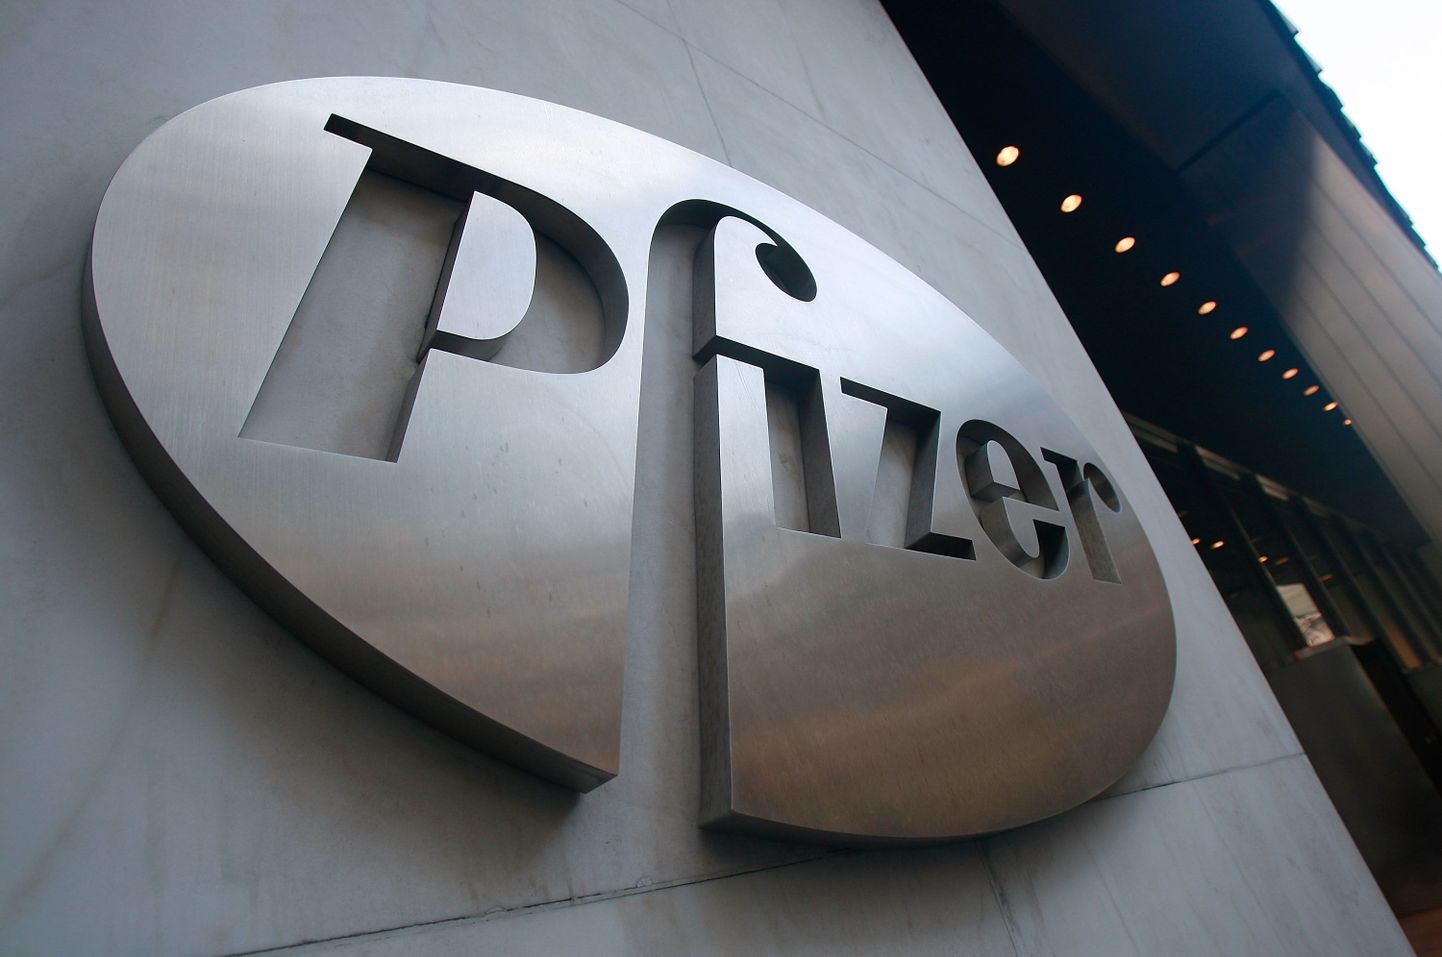 Pfizeri logo ettevõtte peakorteris.